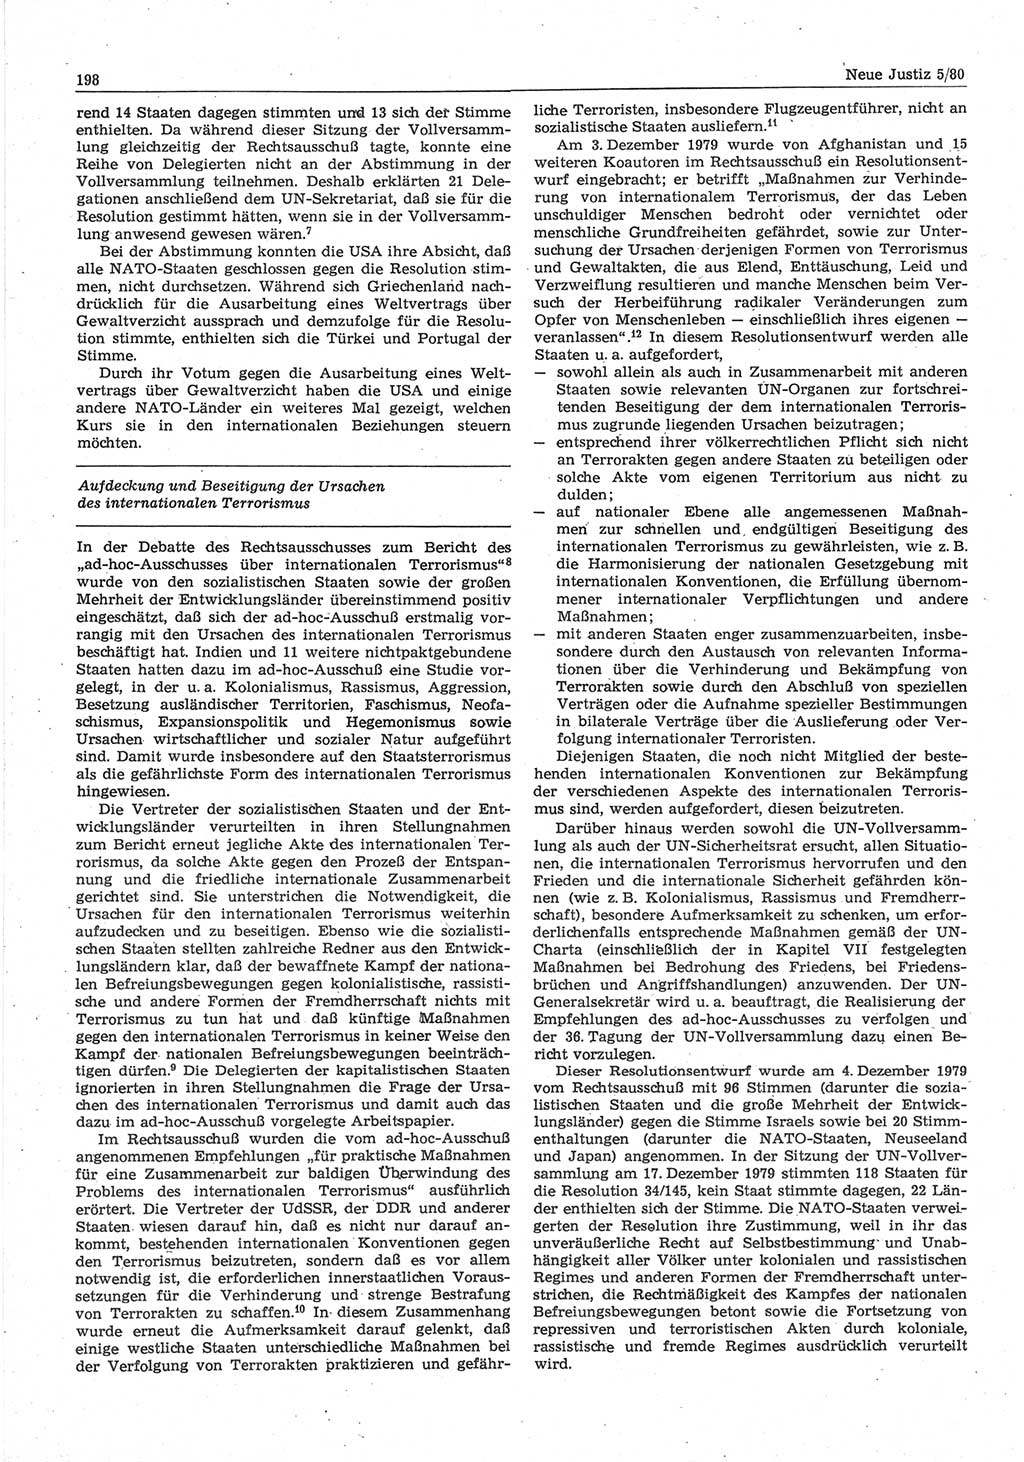 Neue Justiz (NJ), Zeitschrift für sozialistisches Recht und Gesetzlichkeit [Deutsche Demokratische Republik (DDR)], 34. Jahrgang 1980, Seite 198 (NJ DDR 1980, S. 198)